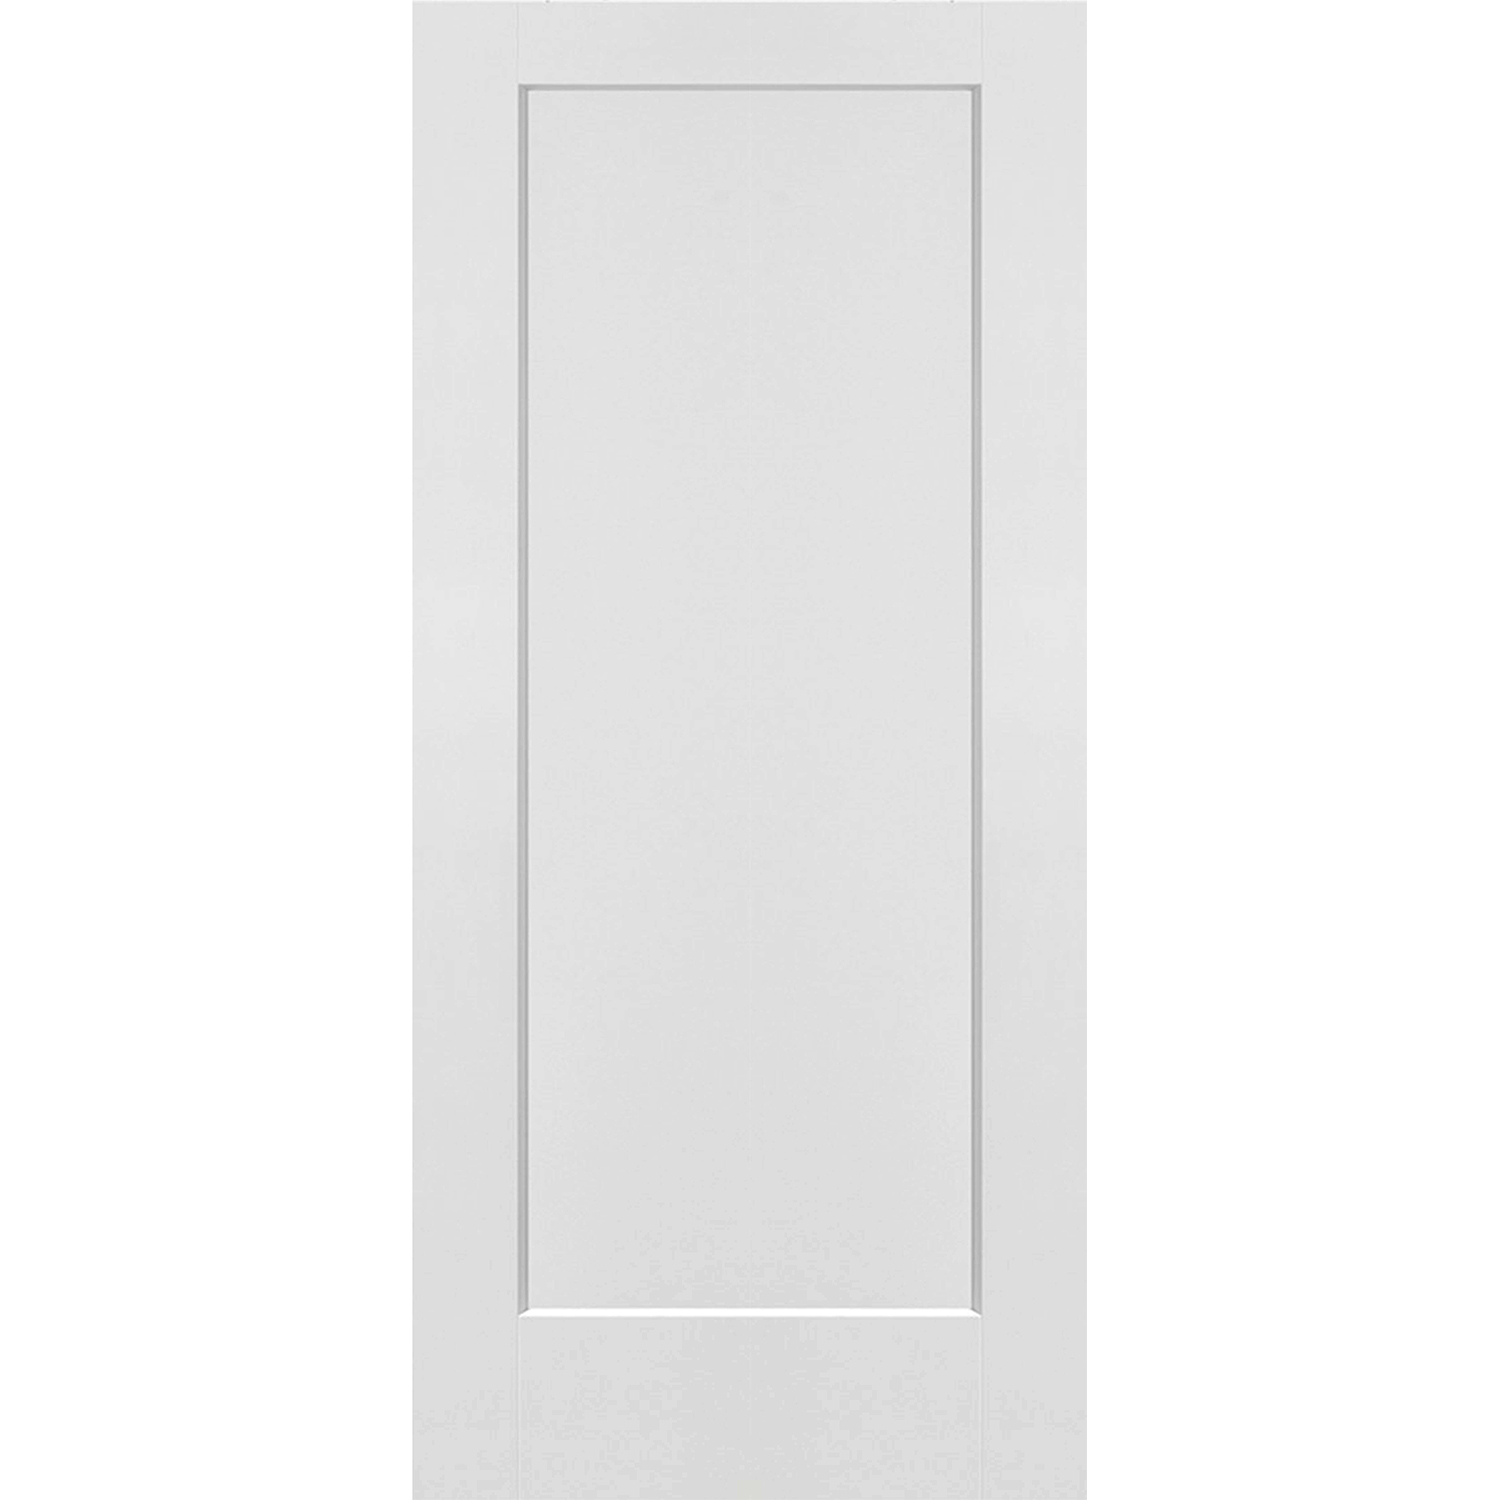 1 Panel Interior Door Shaker Style (Hollow Core) - 36 x 80 - D1HS36